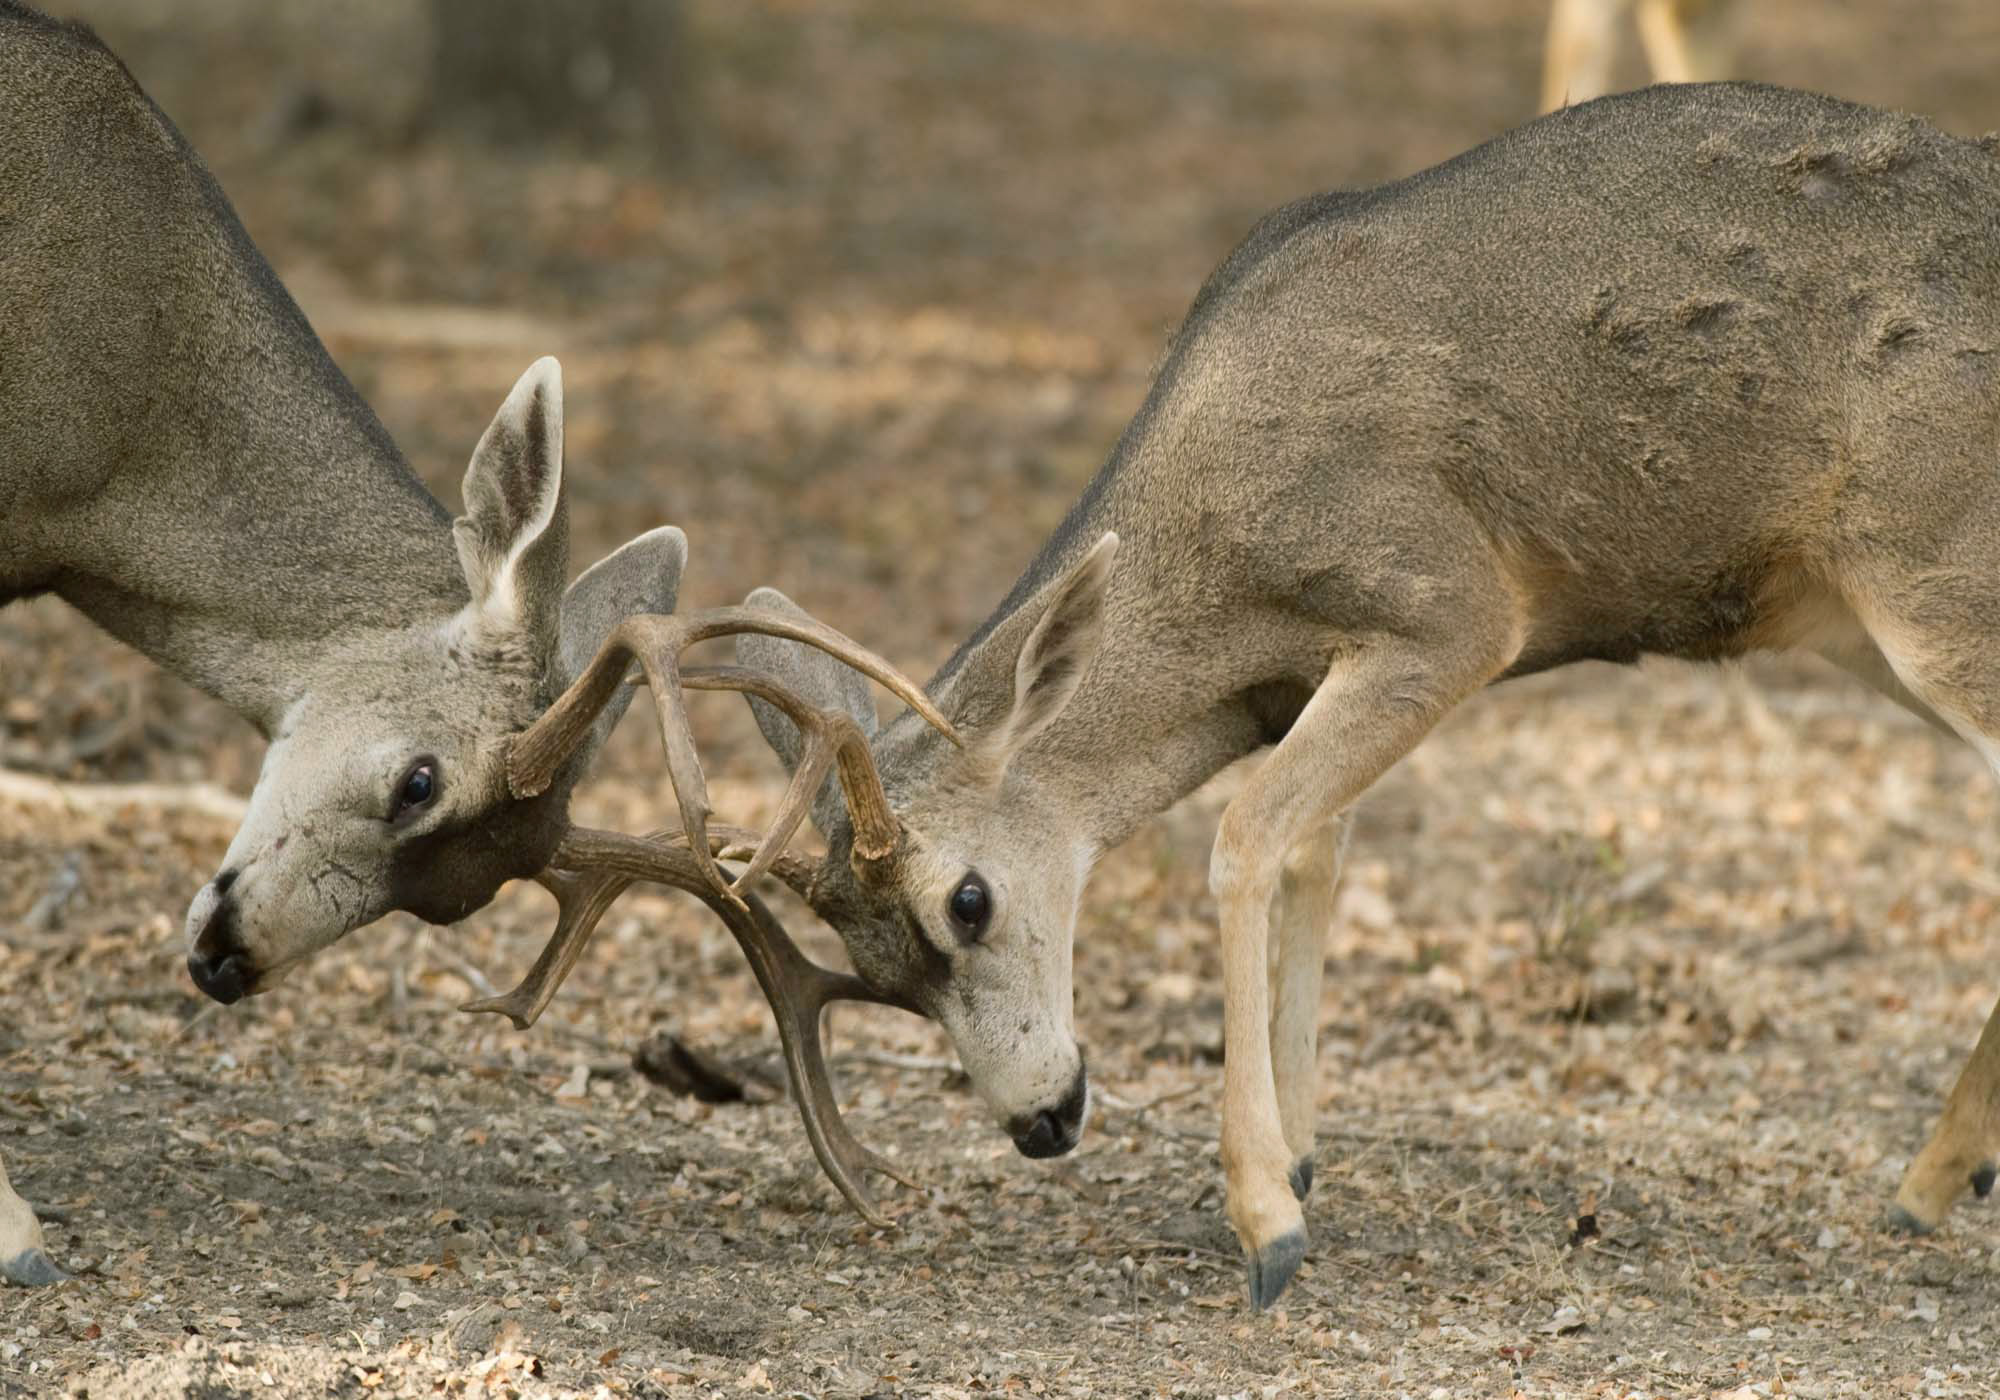 Black-tailed deer bucks in rut fighting